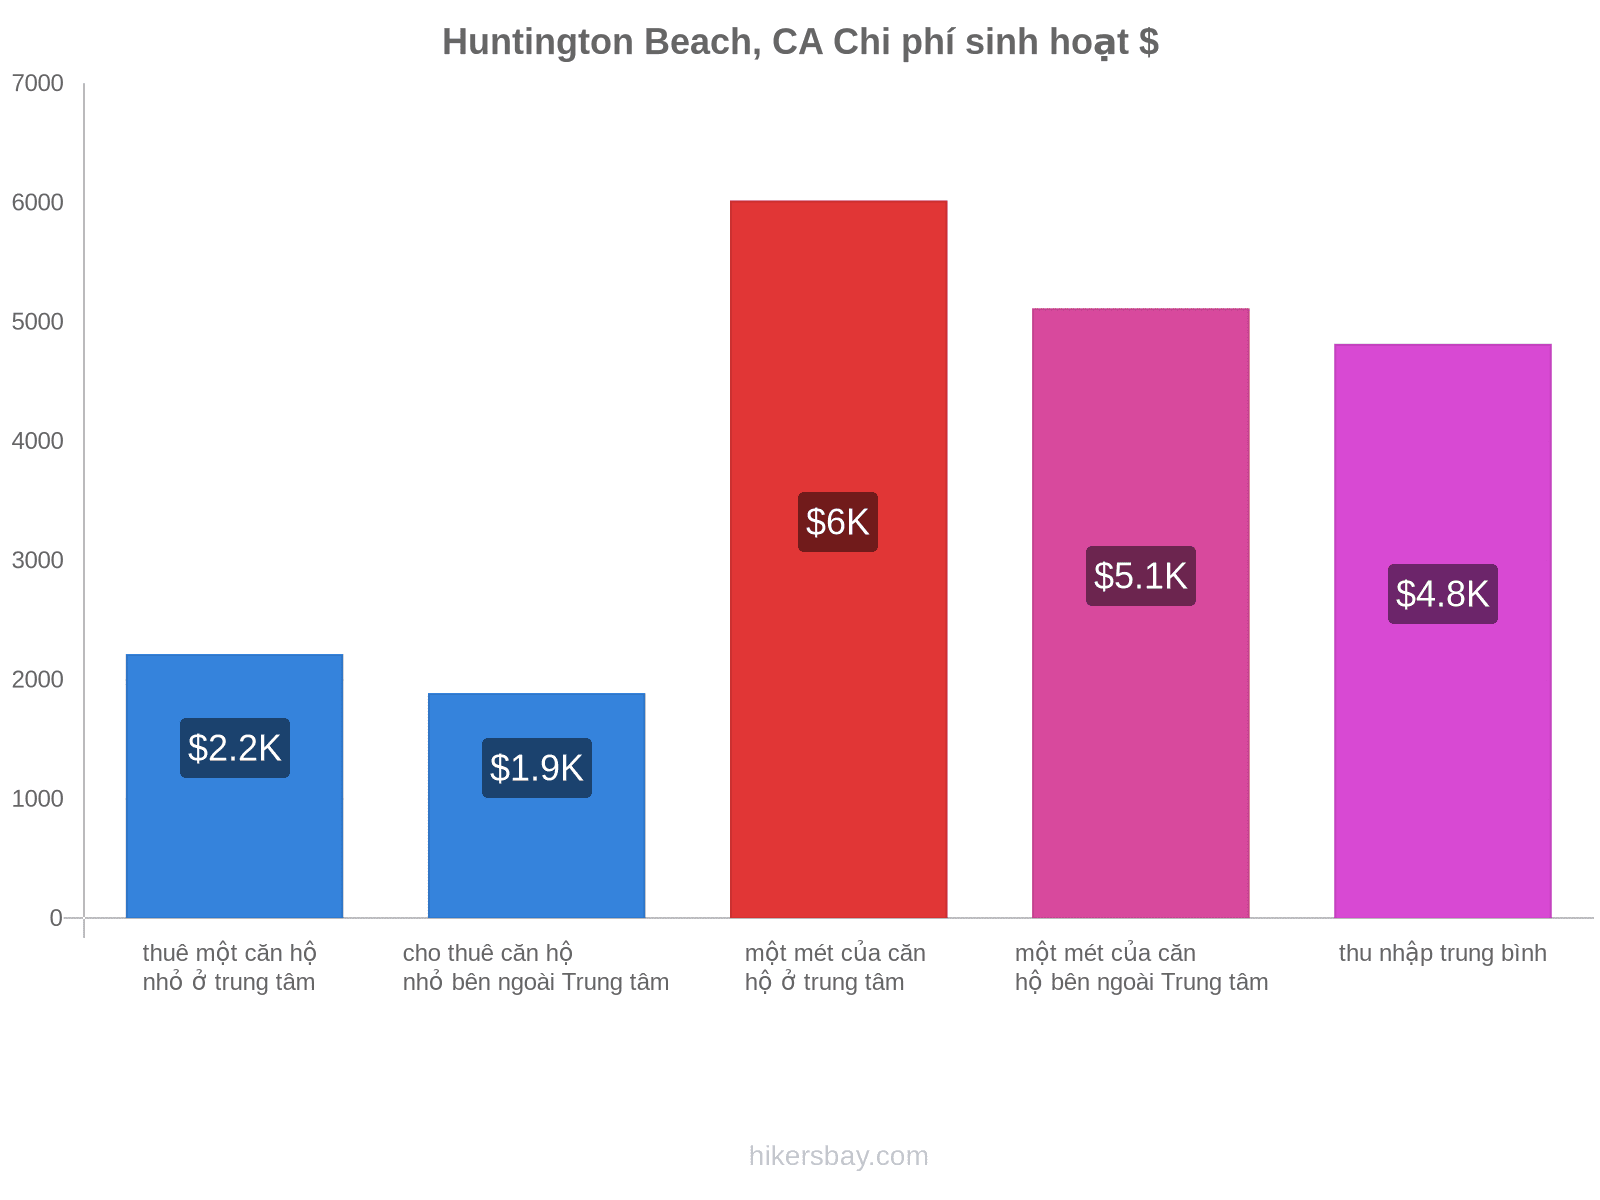 Huntington Beach, CA chi phí sinh hoạt hikersbay.com